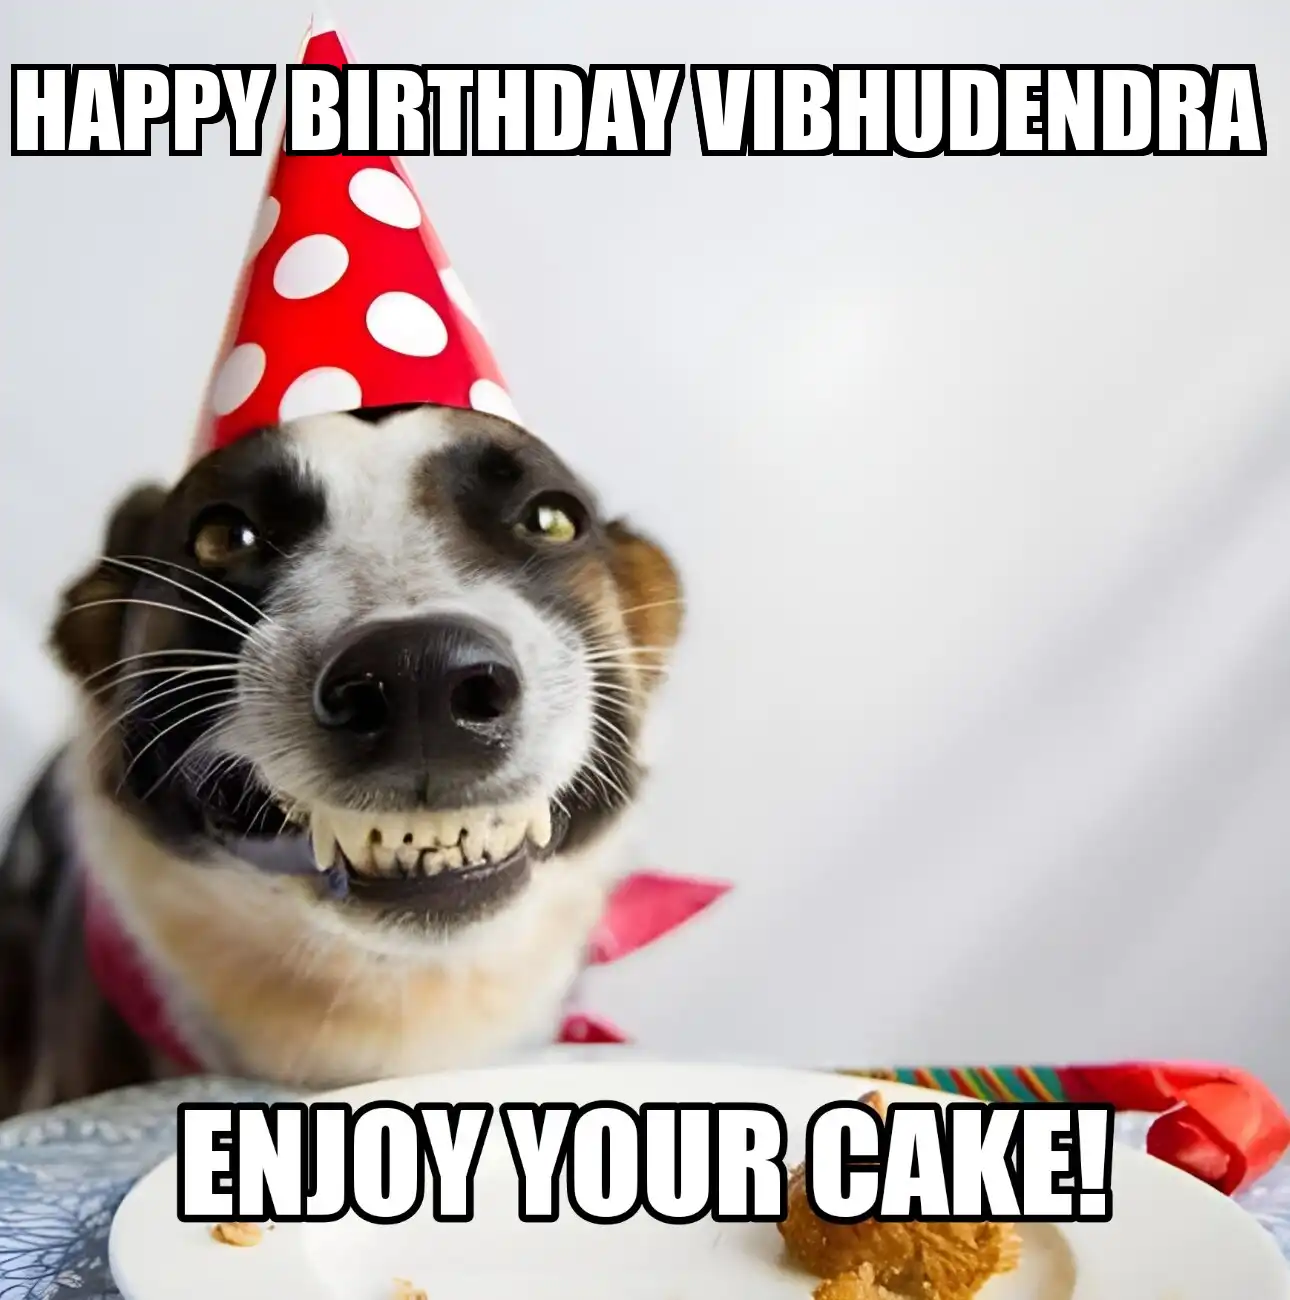 Happy Birthday Vibhudendra Enjoy Your Cake Dog Meme